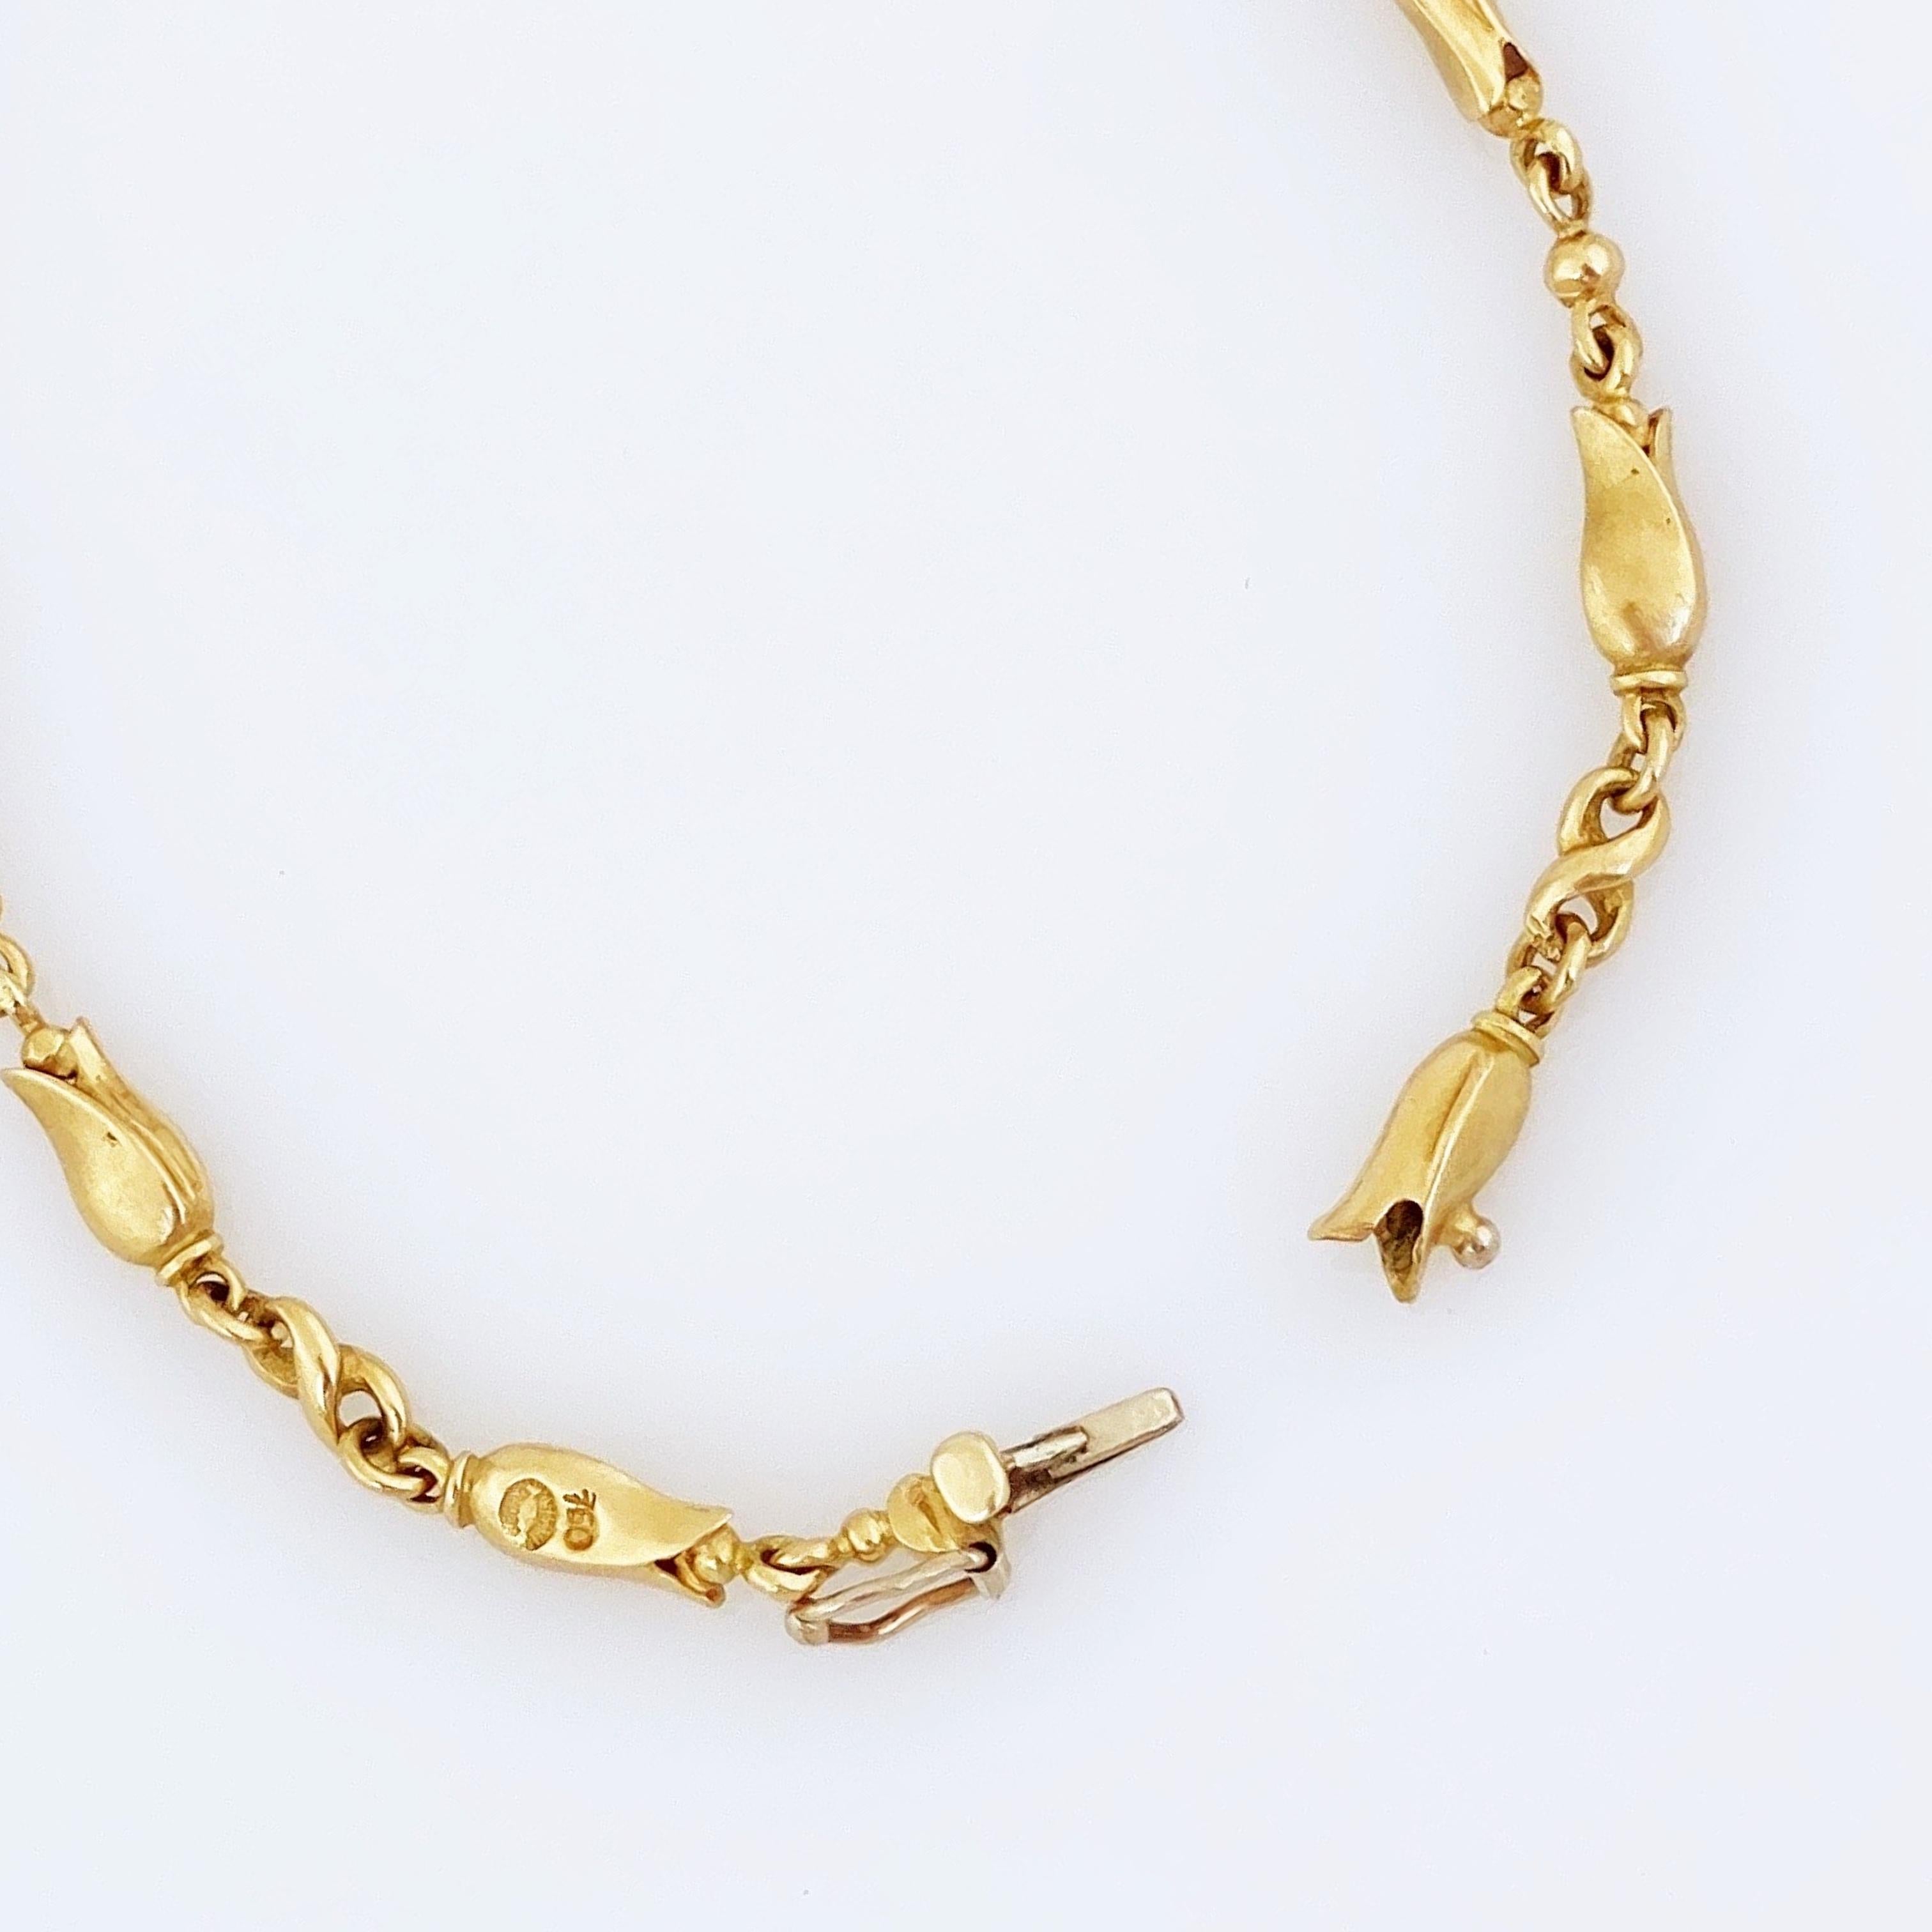 Women's 18k Gold Art Nouveau Tulip Flower Link Bracelet by Georg Jensen, 1960s